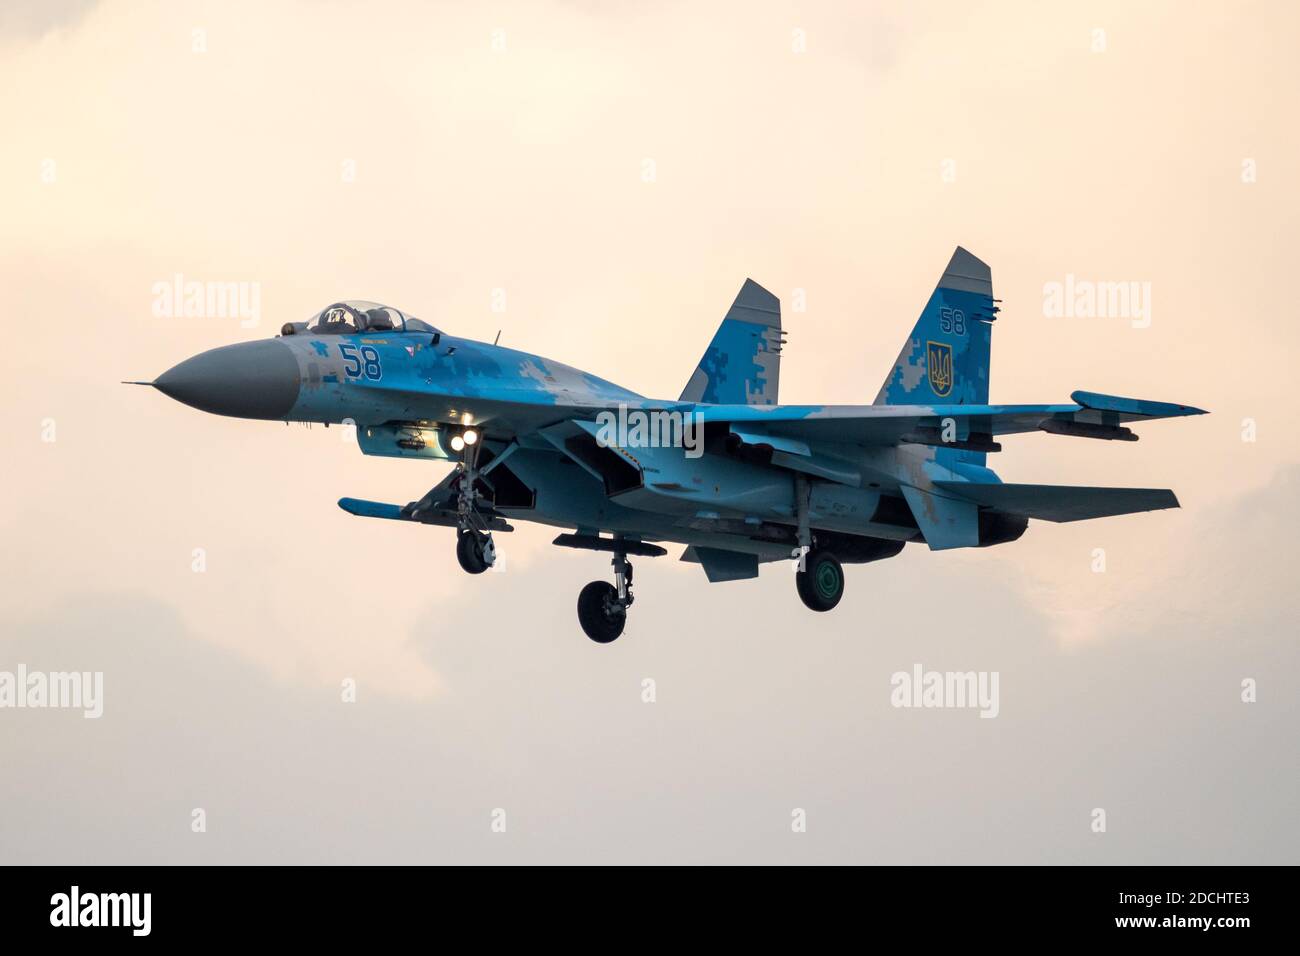 L'avion de chasse Sukhoi su-27 de la Force aérienne ukrainienne s'arrge à la base aérienne de RAF Fairford. Royaume-Uni - 13 juillet 2018 Banque D'Images